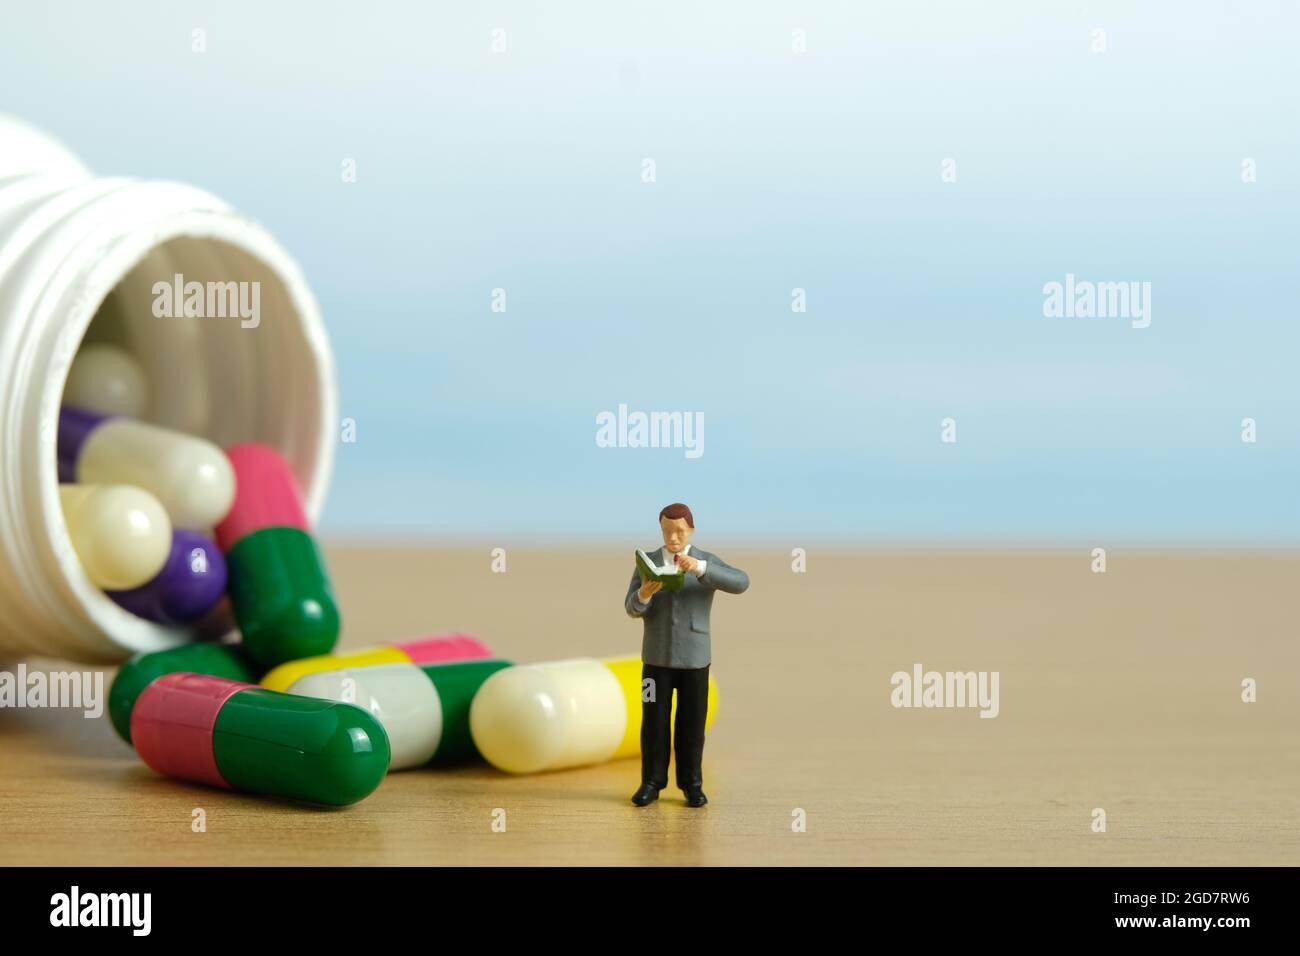 Miniatur Menschen Spielzeug Figur Fotografie. Ein männler Student, der mitten in der Medikamentenpille steht und die Zutat liest. Bildfoto Stockfoto